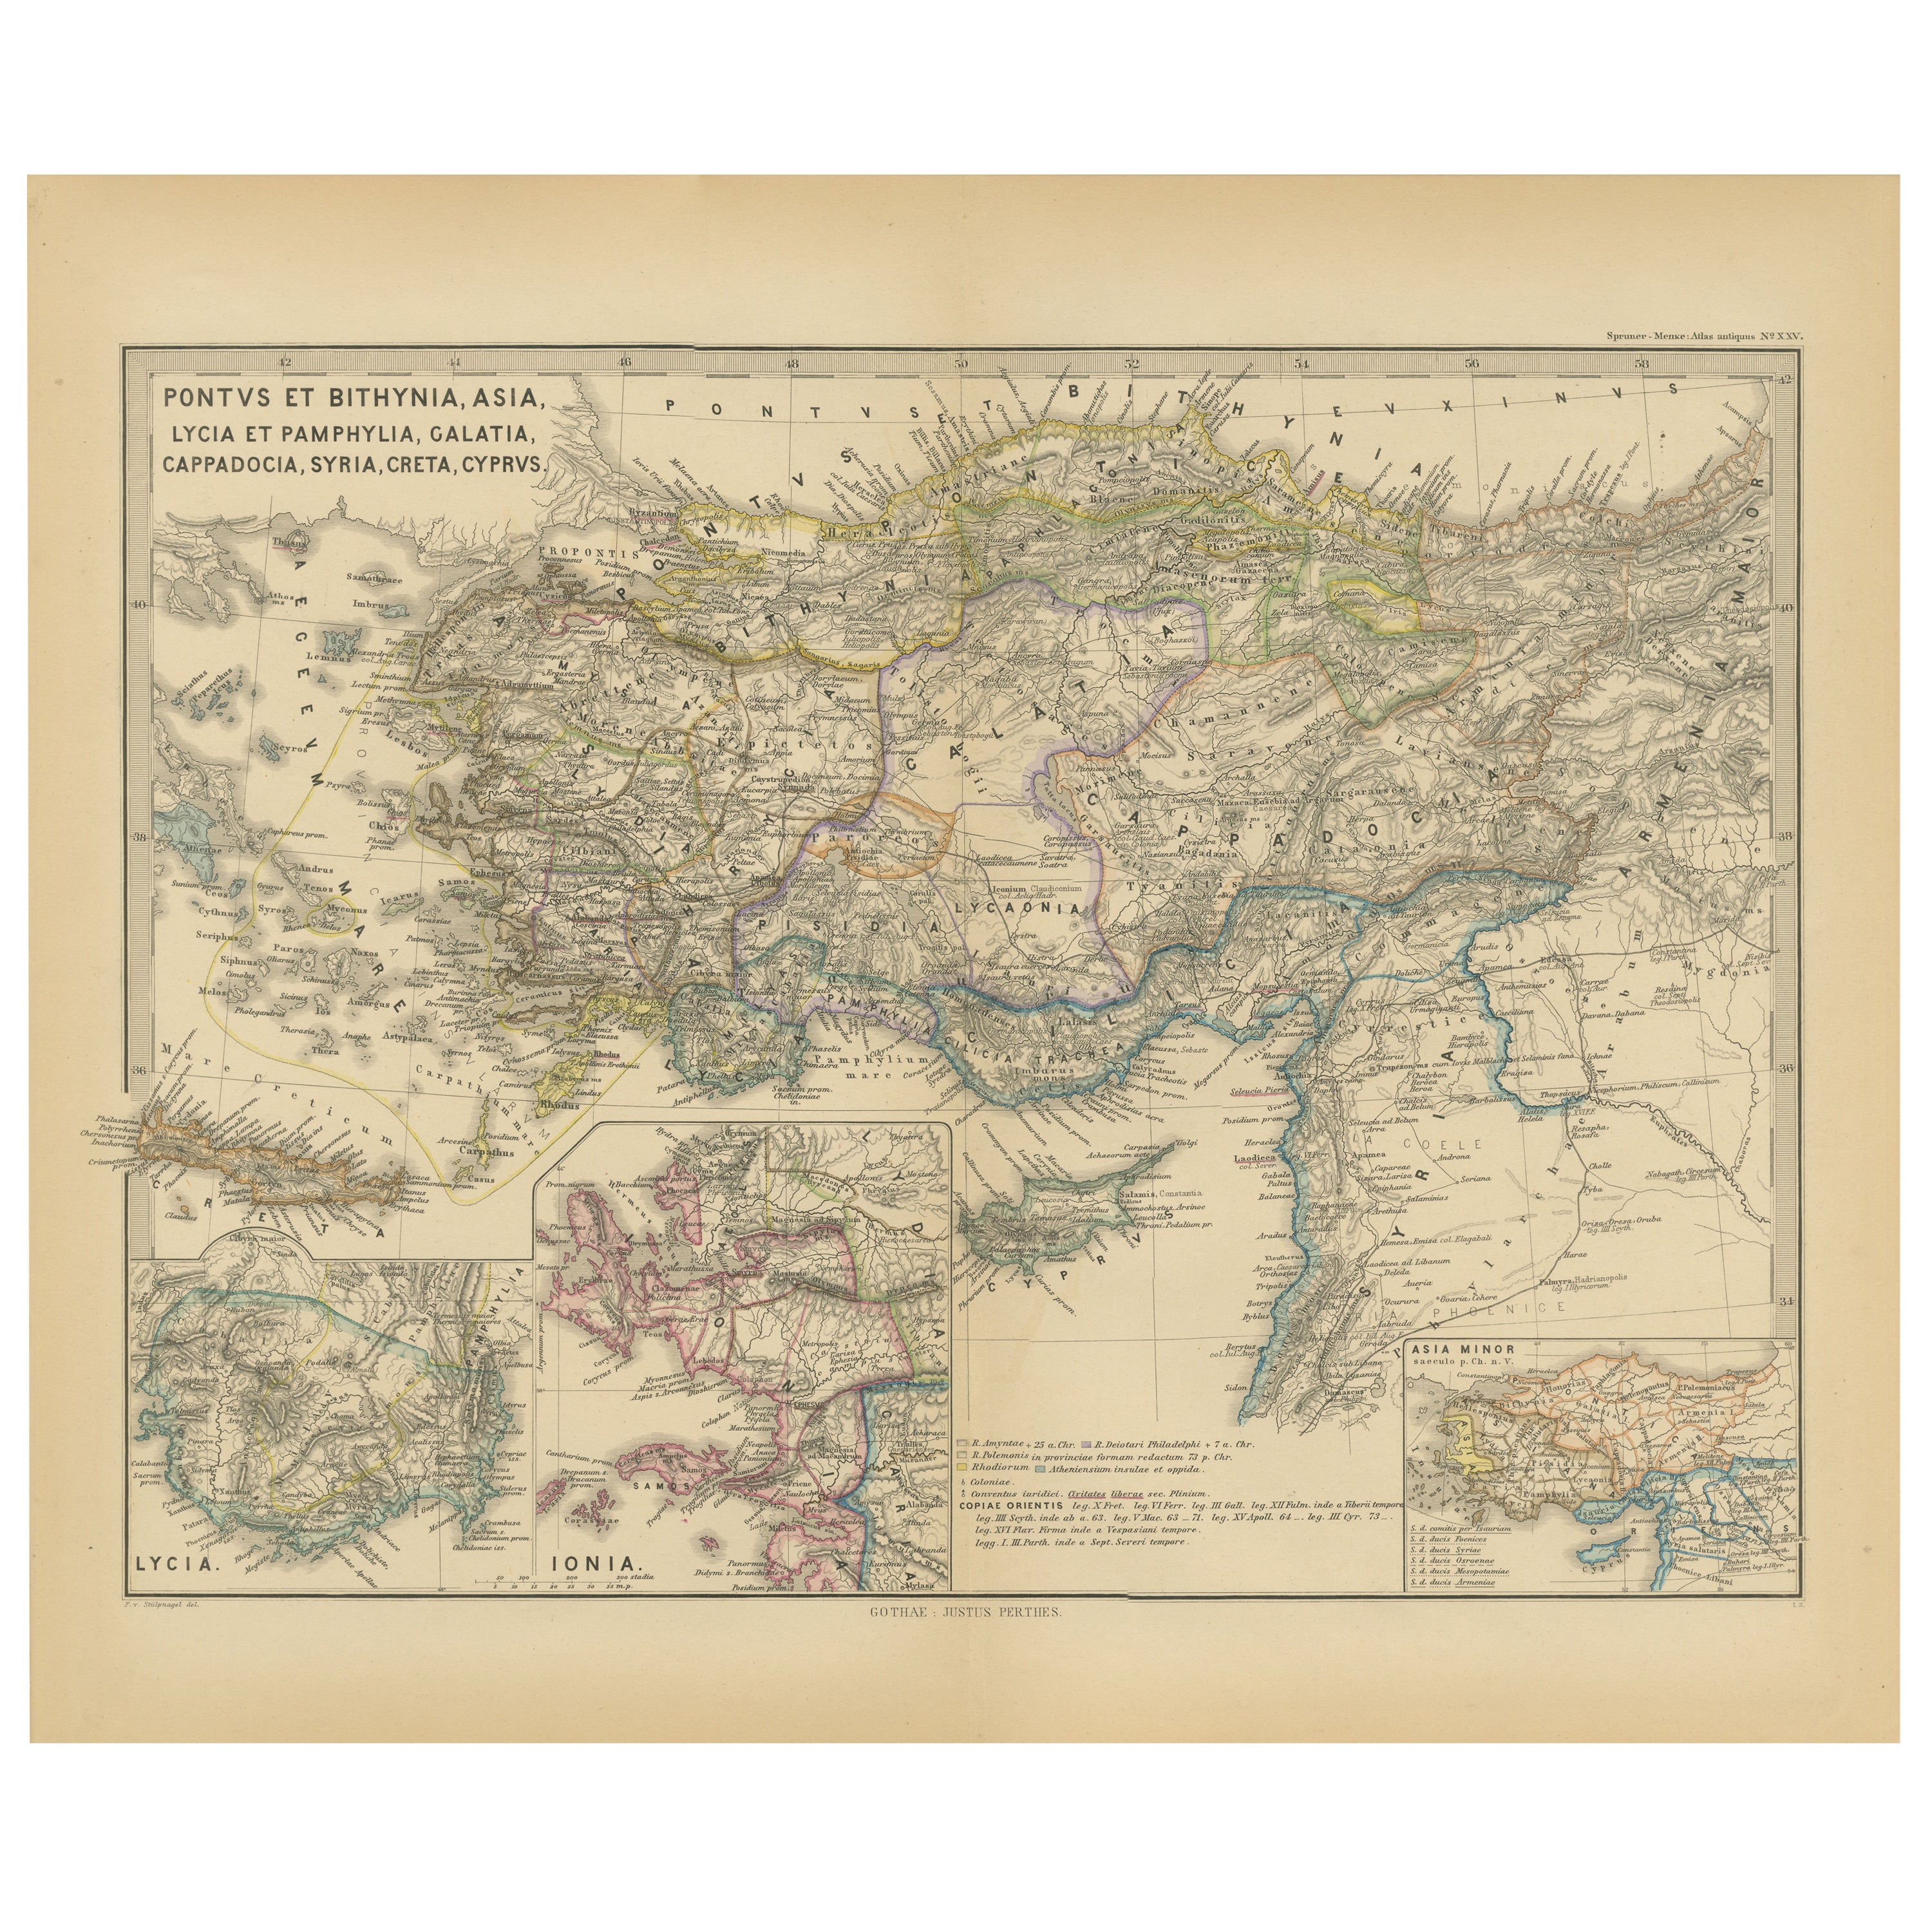 Kleinasien und Provinzen: Eine Karte des Römischen Reiches aus dem Spruner-Menke Atlas, 1880